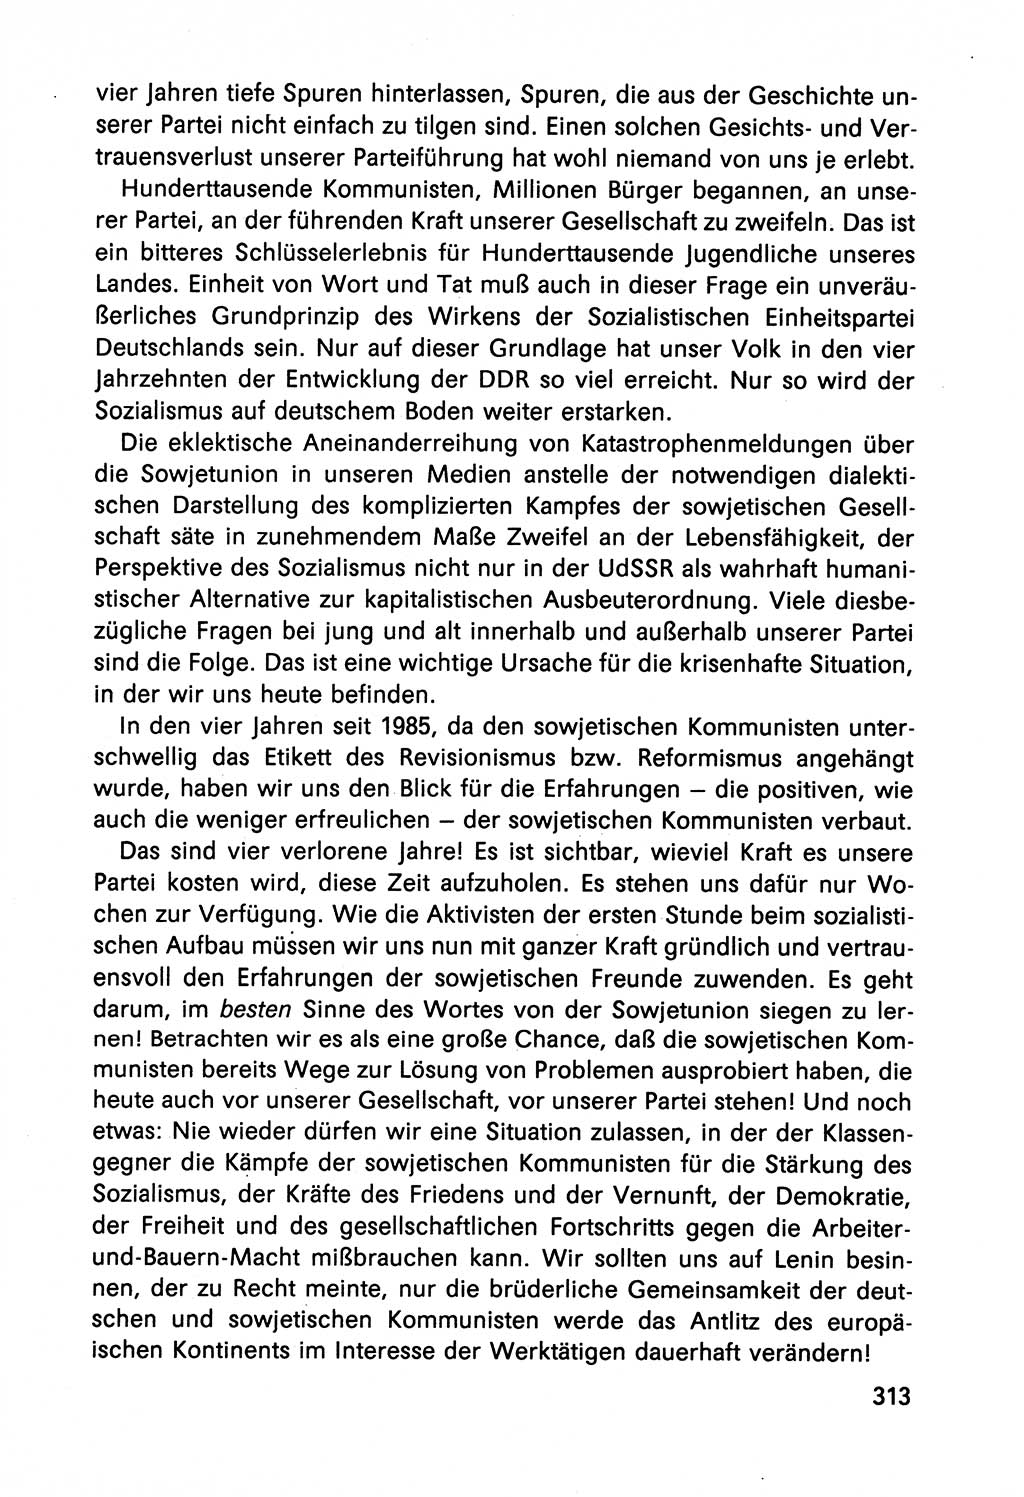 Diskussionsbeiträge, 10. Tagung des ZK (Zentralkomitee) der SED (Sozialistische Einheitspartei Deutschlands) [Deutsche Demokratische Republik (DDR)] 1989, Seite 313 (Disk.-Beitr. 10. Tg. ZK SED DDR 1989, S. 313)